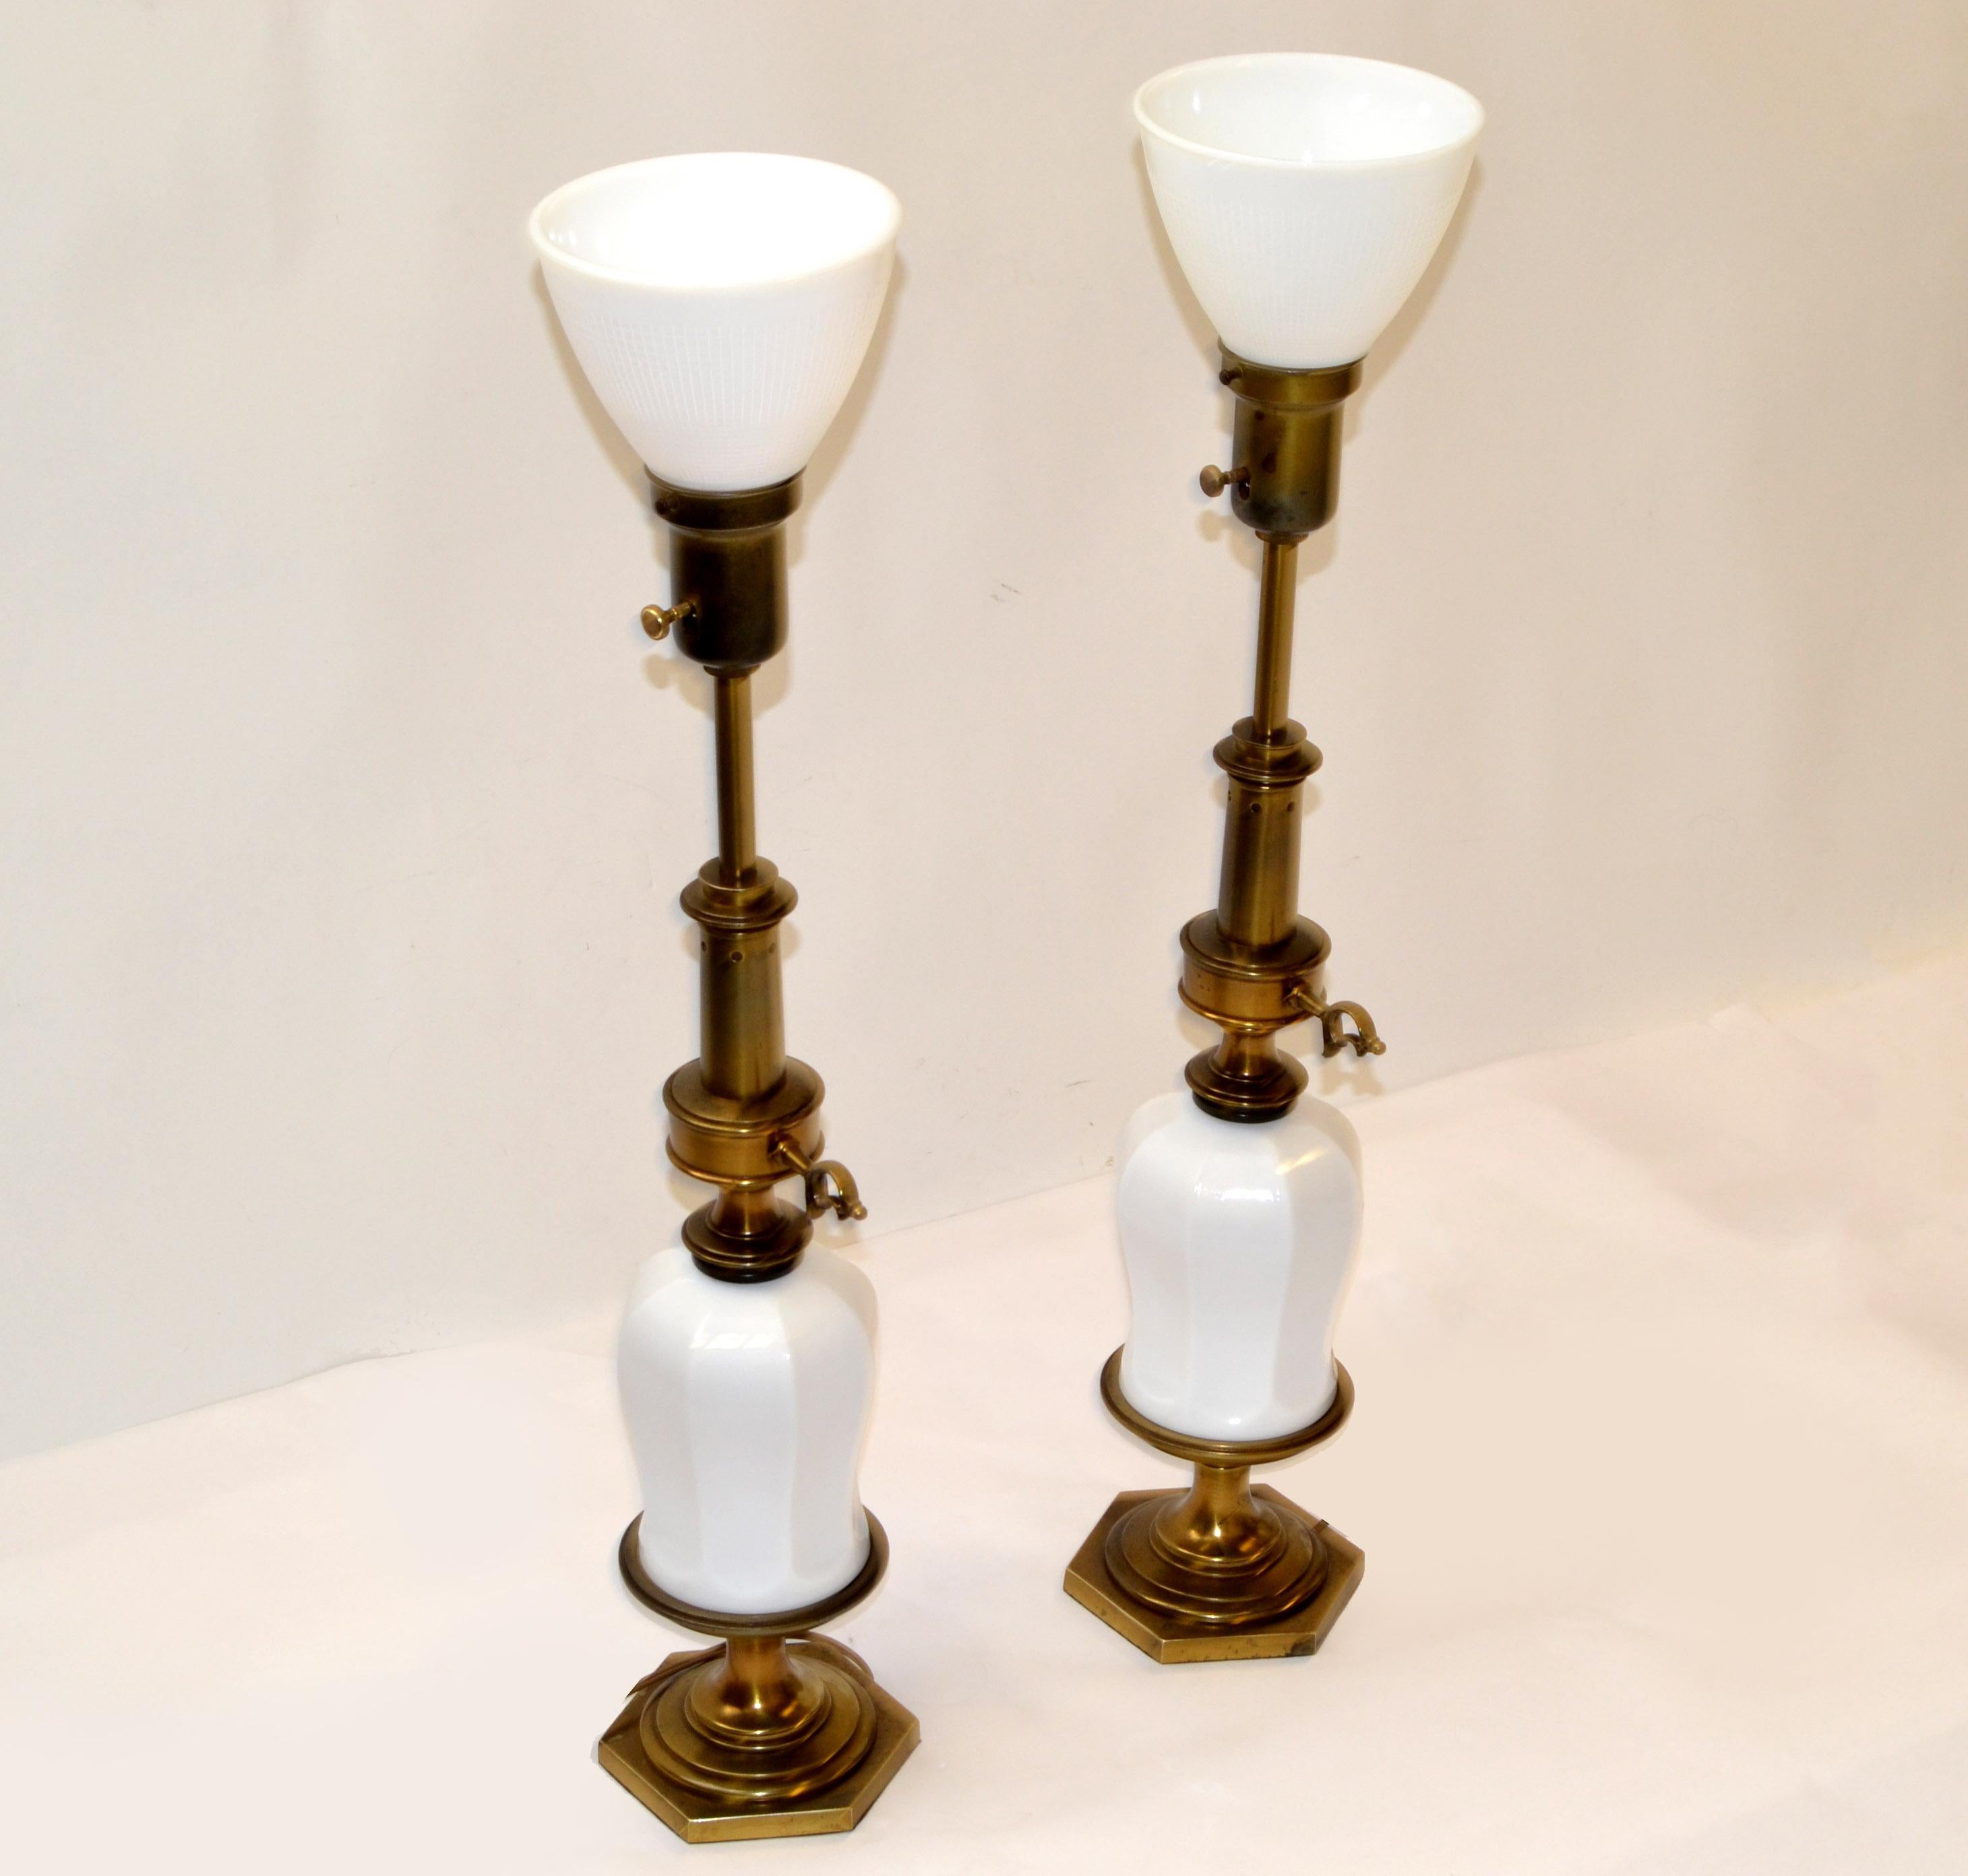 Paire de superbes lampes de table de style Chinoiserie attribuées à Stiffel en porcelaine en forme de vase et comprenant une torchère classique en laiton et un piédestal. Longue tige originale en laiton de style torchère avec un diffuseur en verre